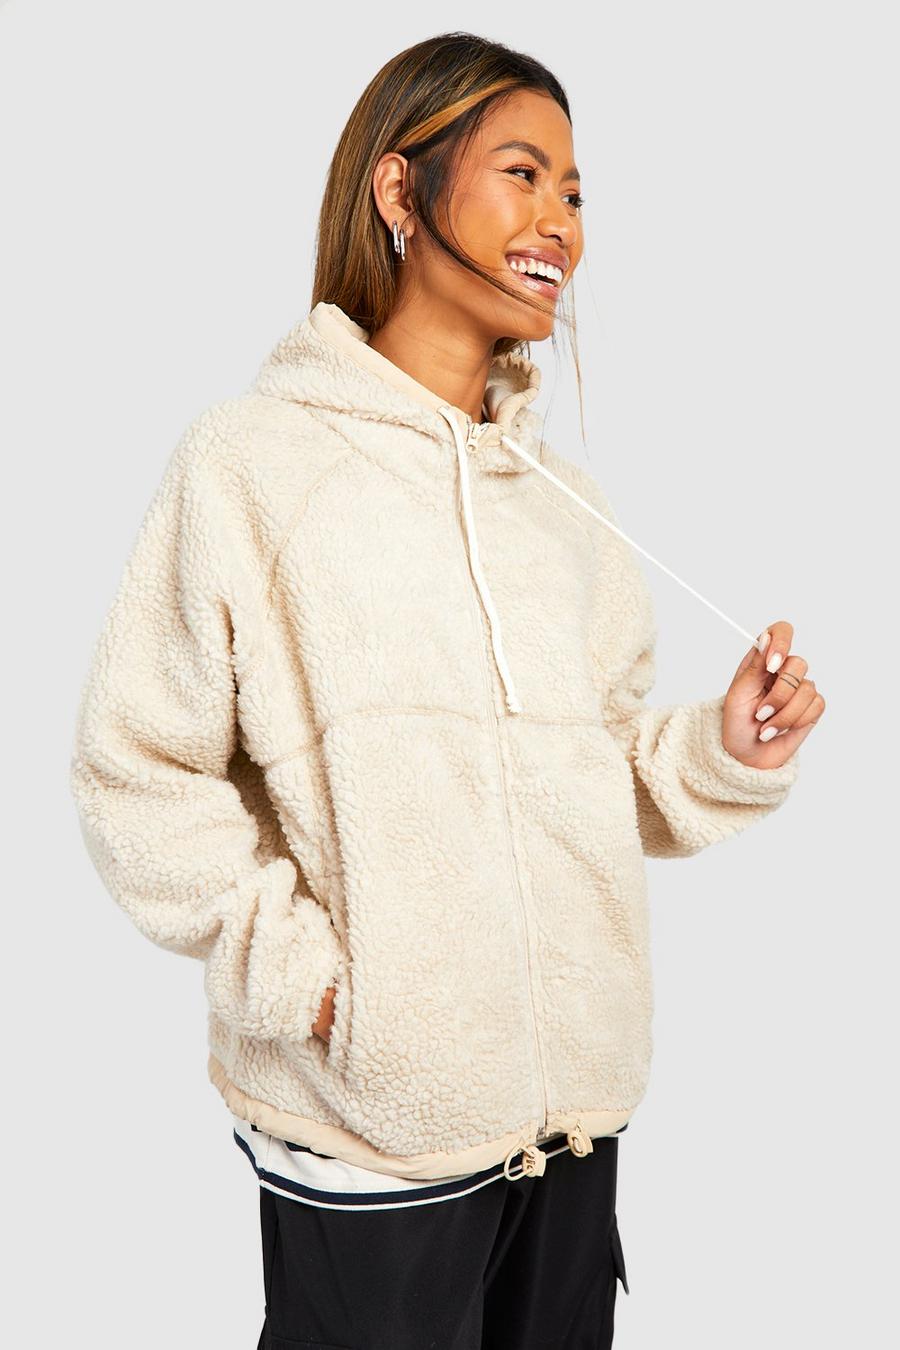 Womens Teddy Warm Fleece Hoodie Cute Bear Ears Fuzzy Fleece Sweatshirt Teen  Girl's Winter Sherpa Pullover Jumper Coat, Brown, Small : :  Clothing, Shoes & Accessories